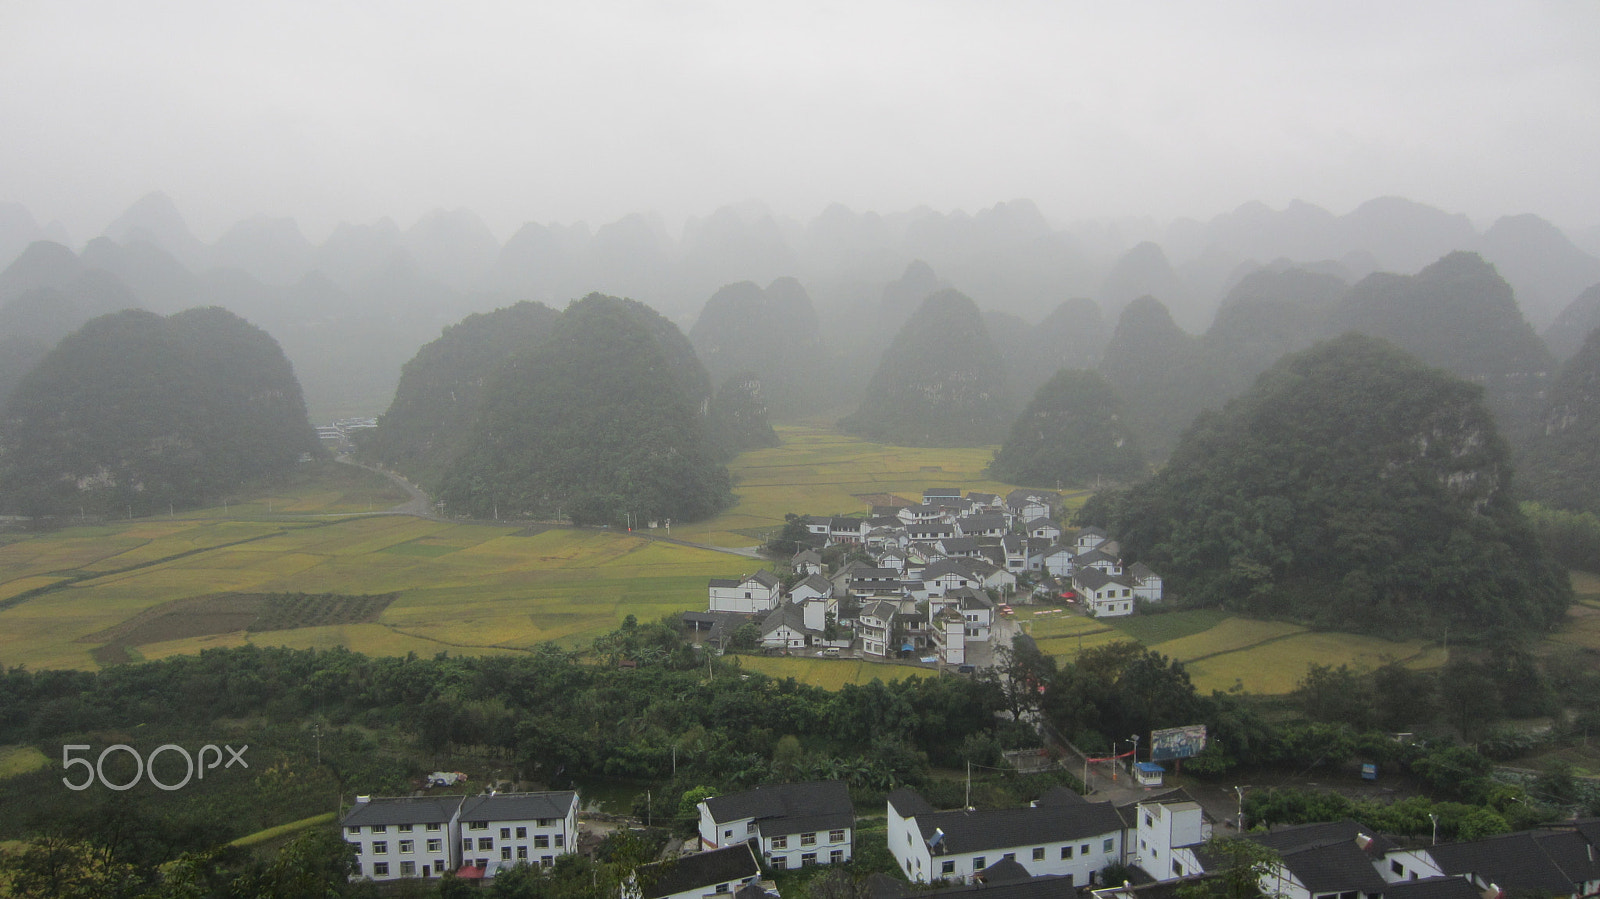 Canon PowerShot ELPH 300 HS (IXUS 220 HS / IXY 410F) sample photo. Guizhou landscape of karst landform photography